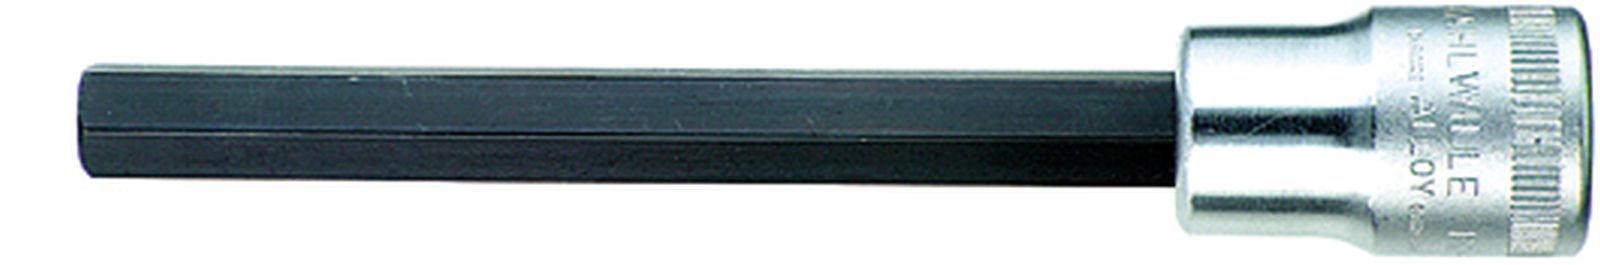 Nasadka INHEX 1/2" 5mm extra długa, L=120mm STAHLWILLE